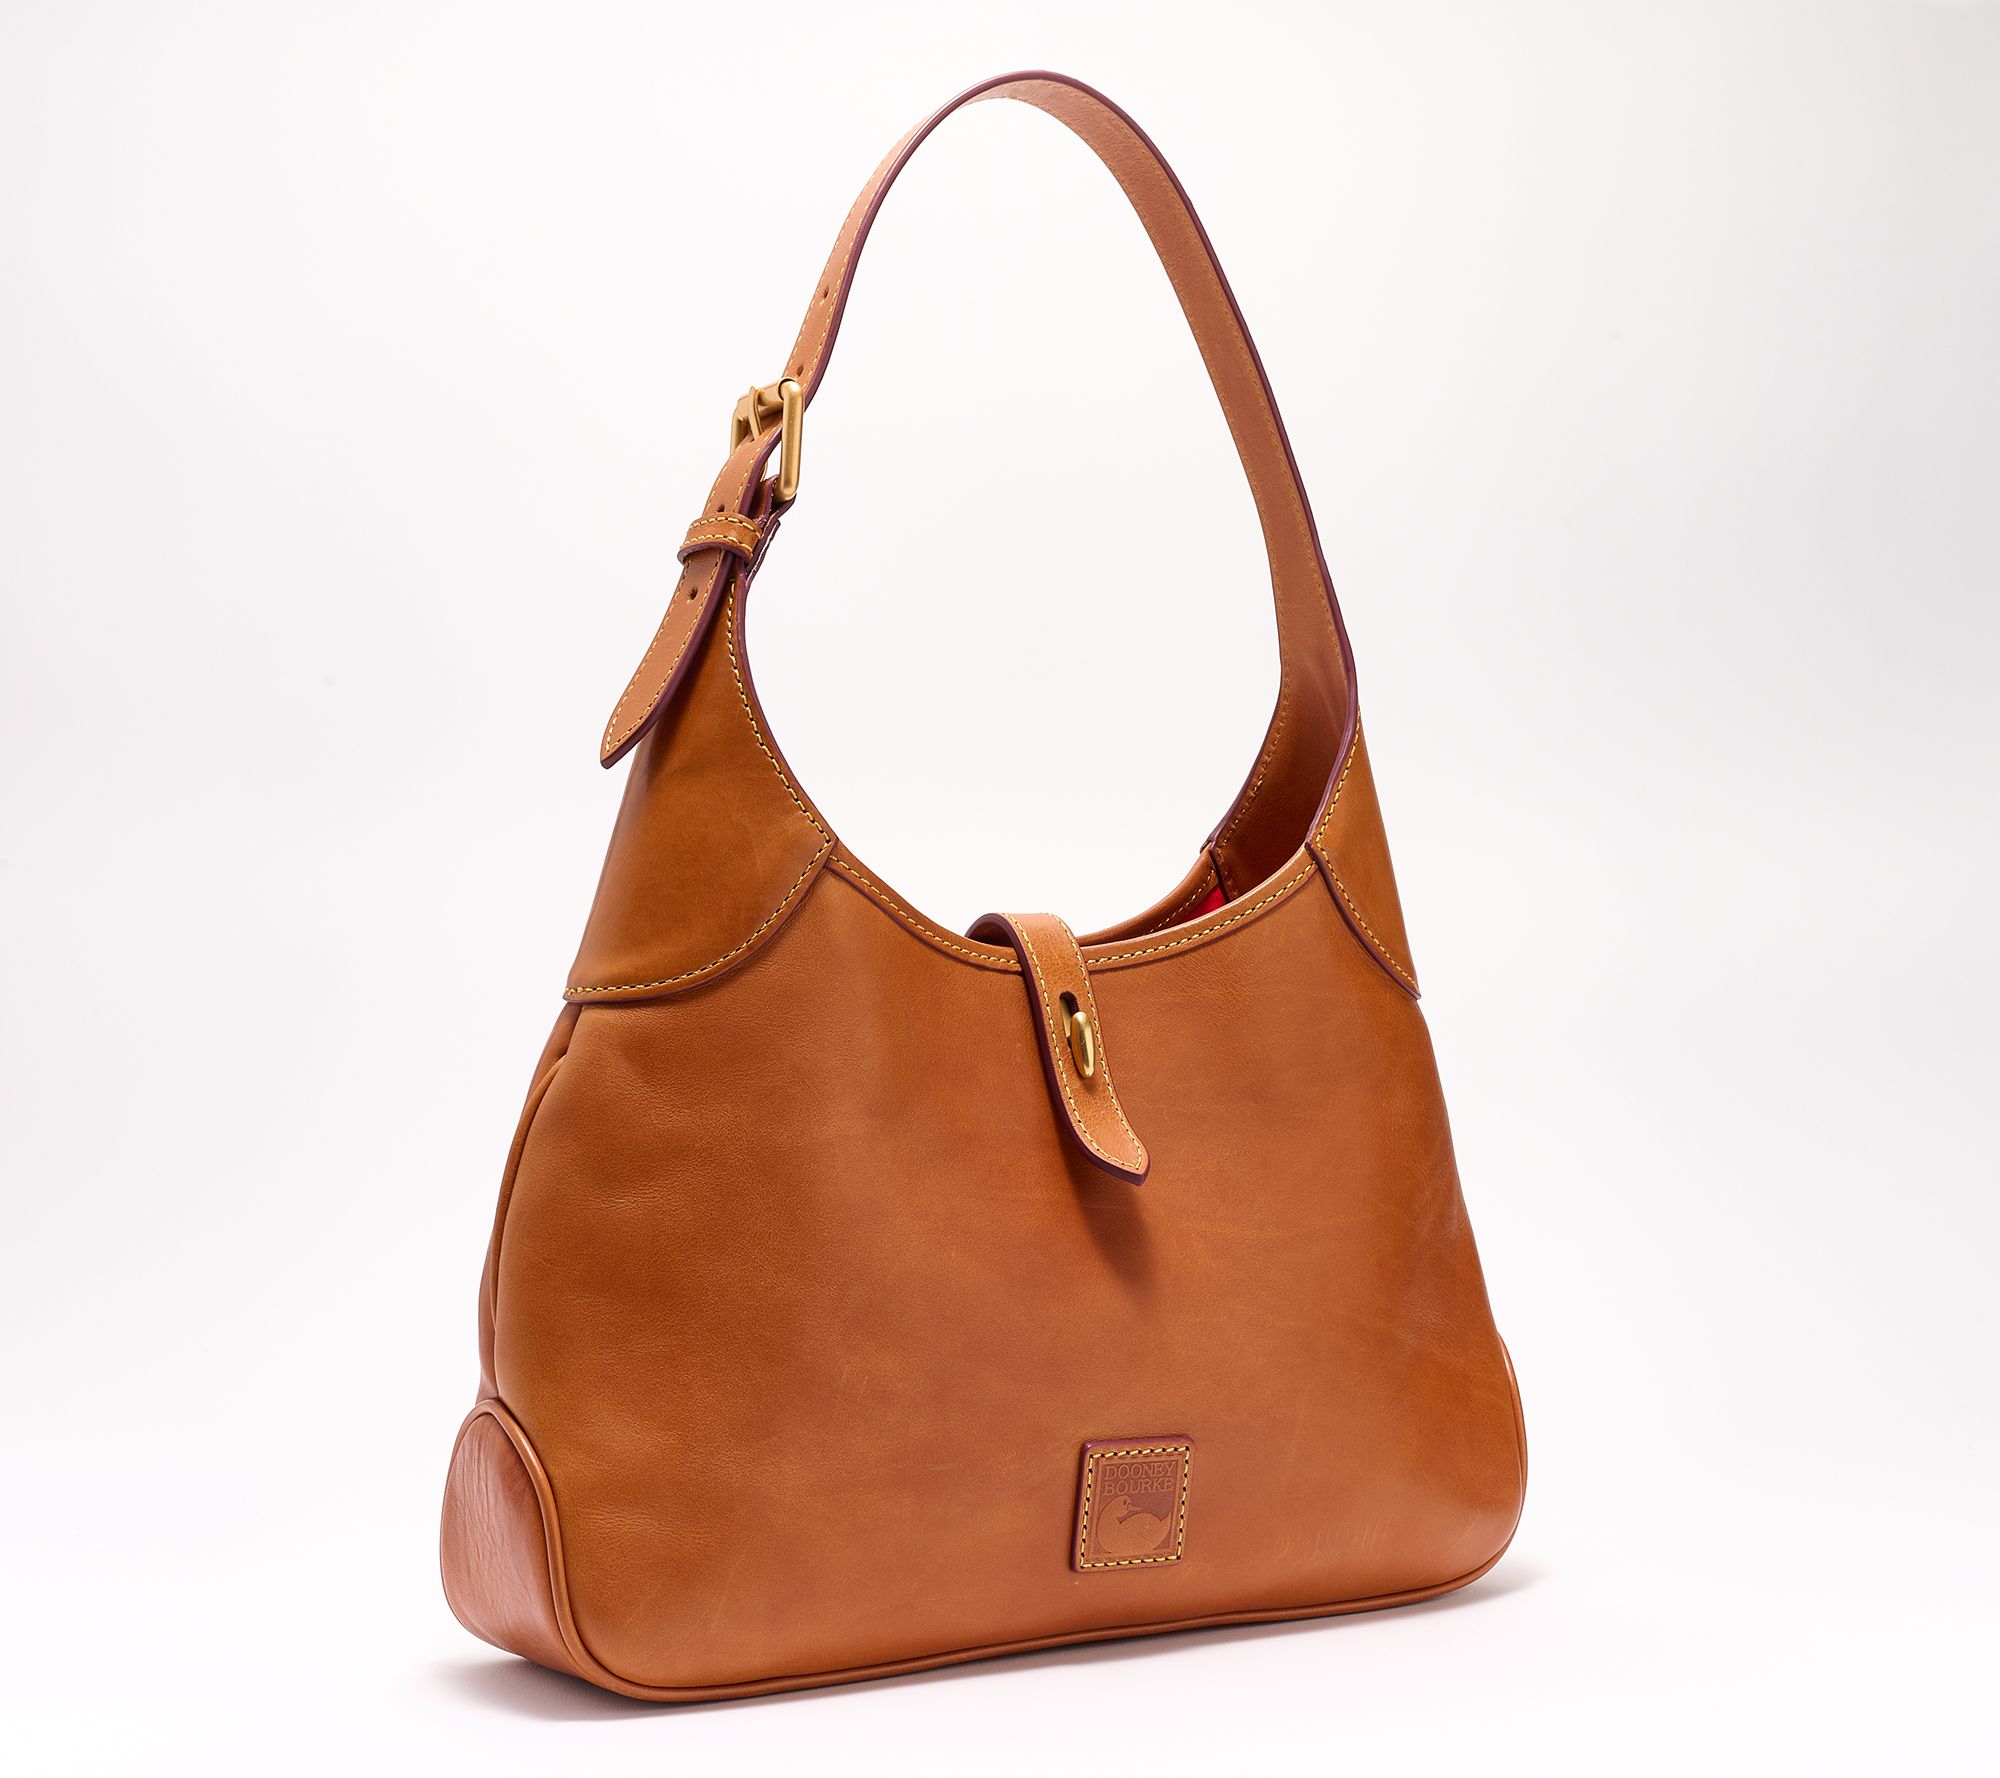 Mini flap bag & star coin purse, Mirror calfskin, metallic